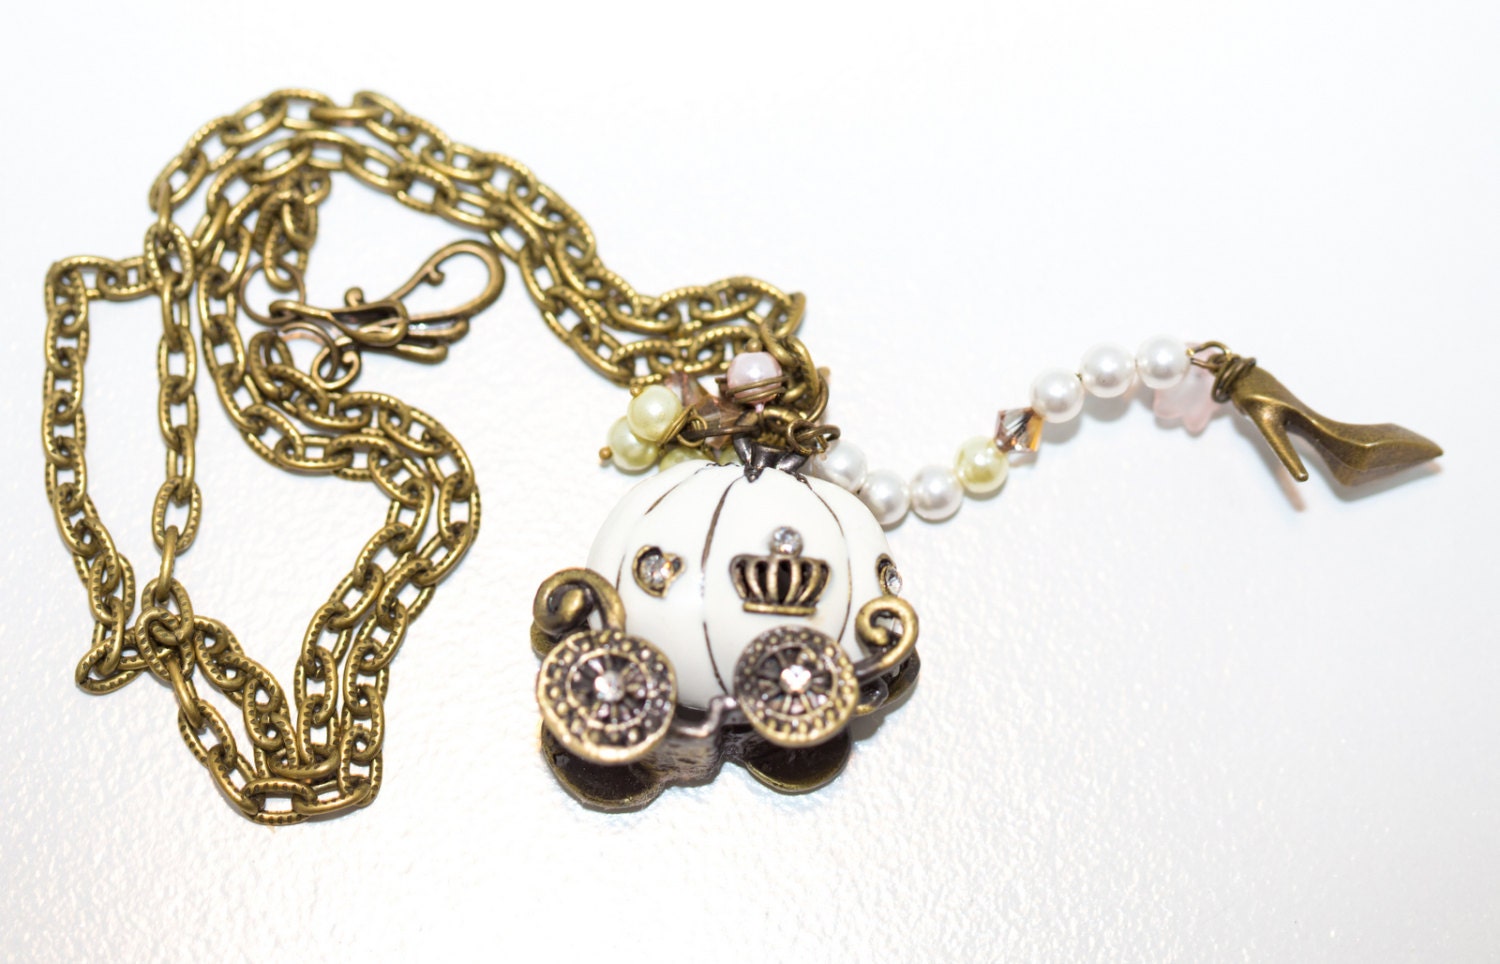 Cinderella's Ride Vintage Style Necklace With Swarovski | Etsy